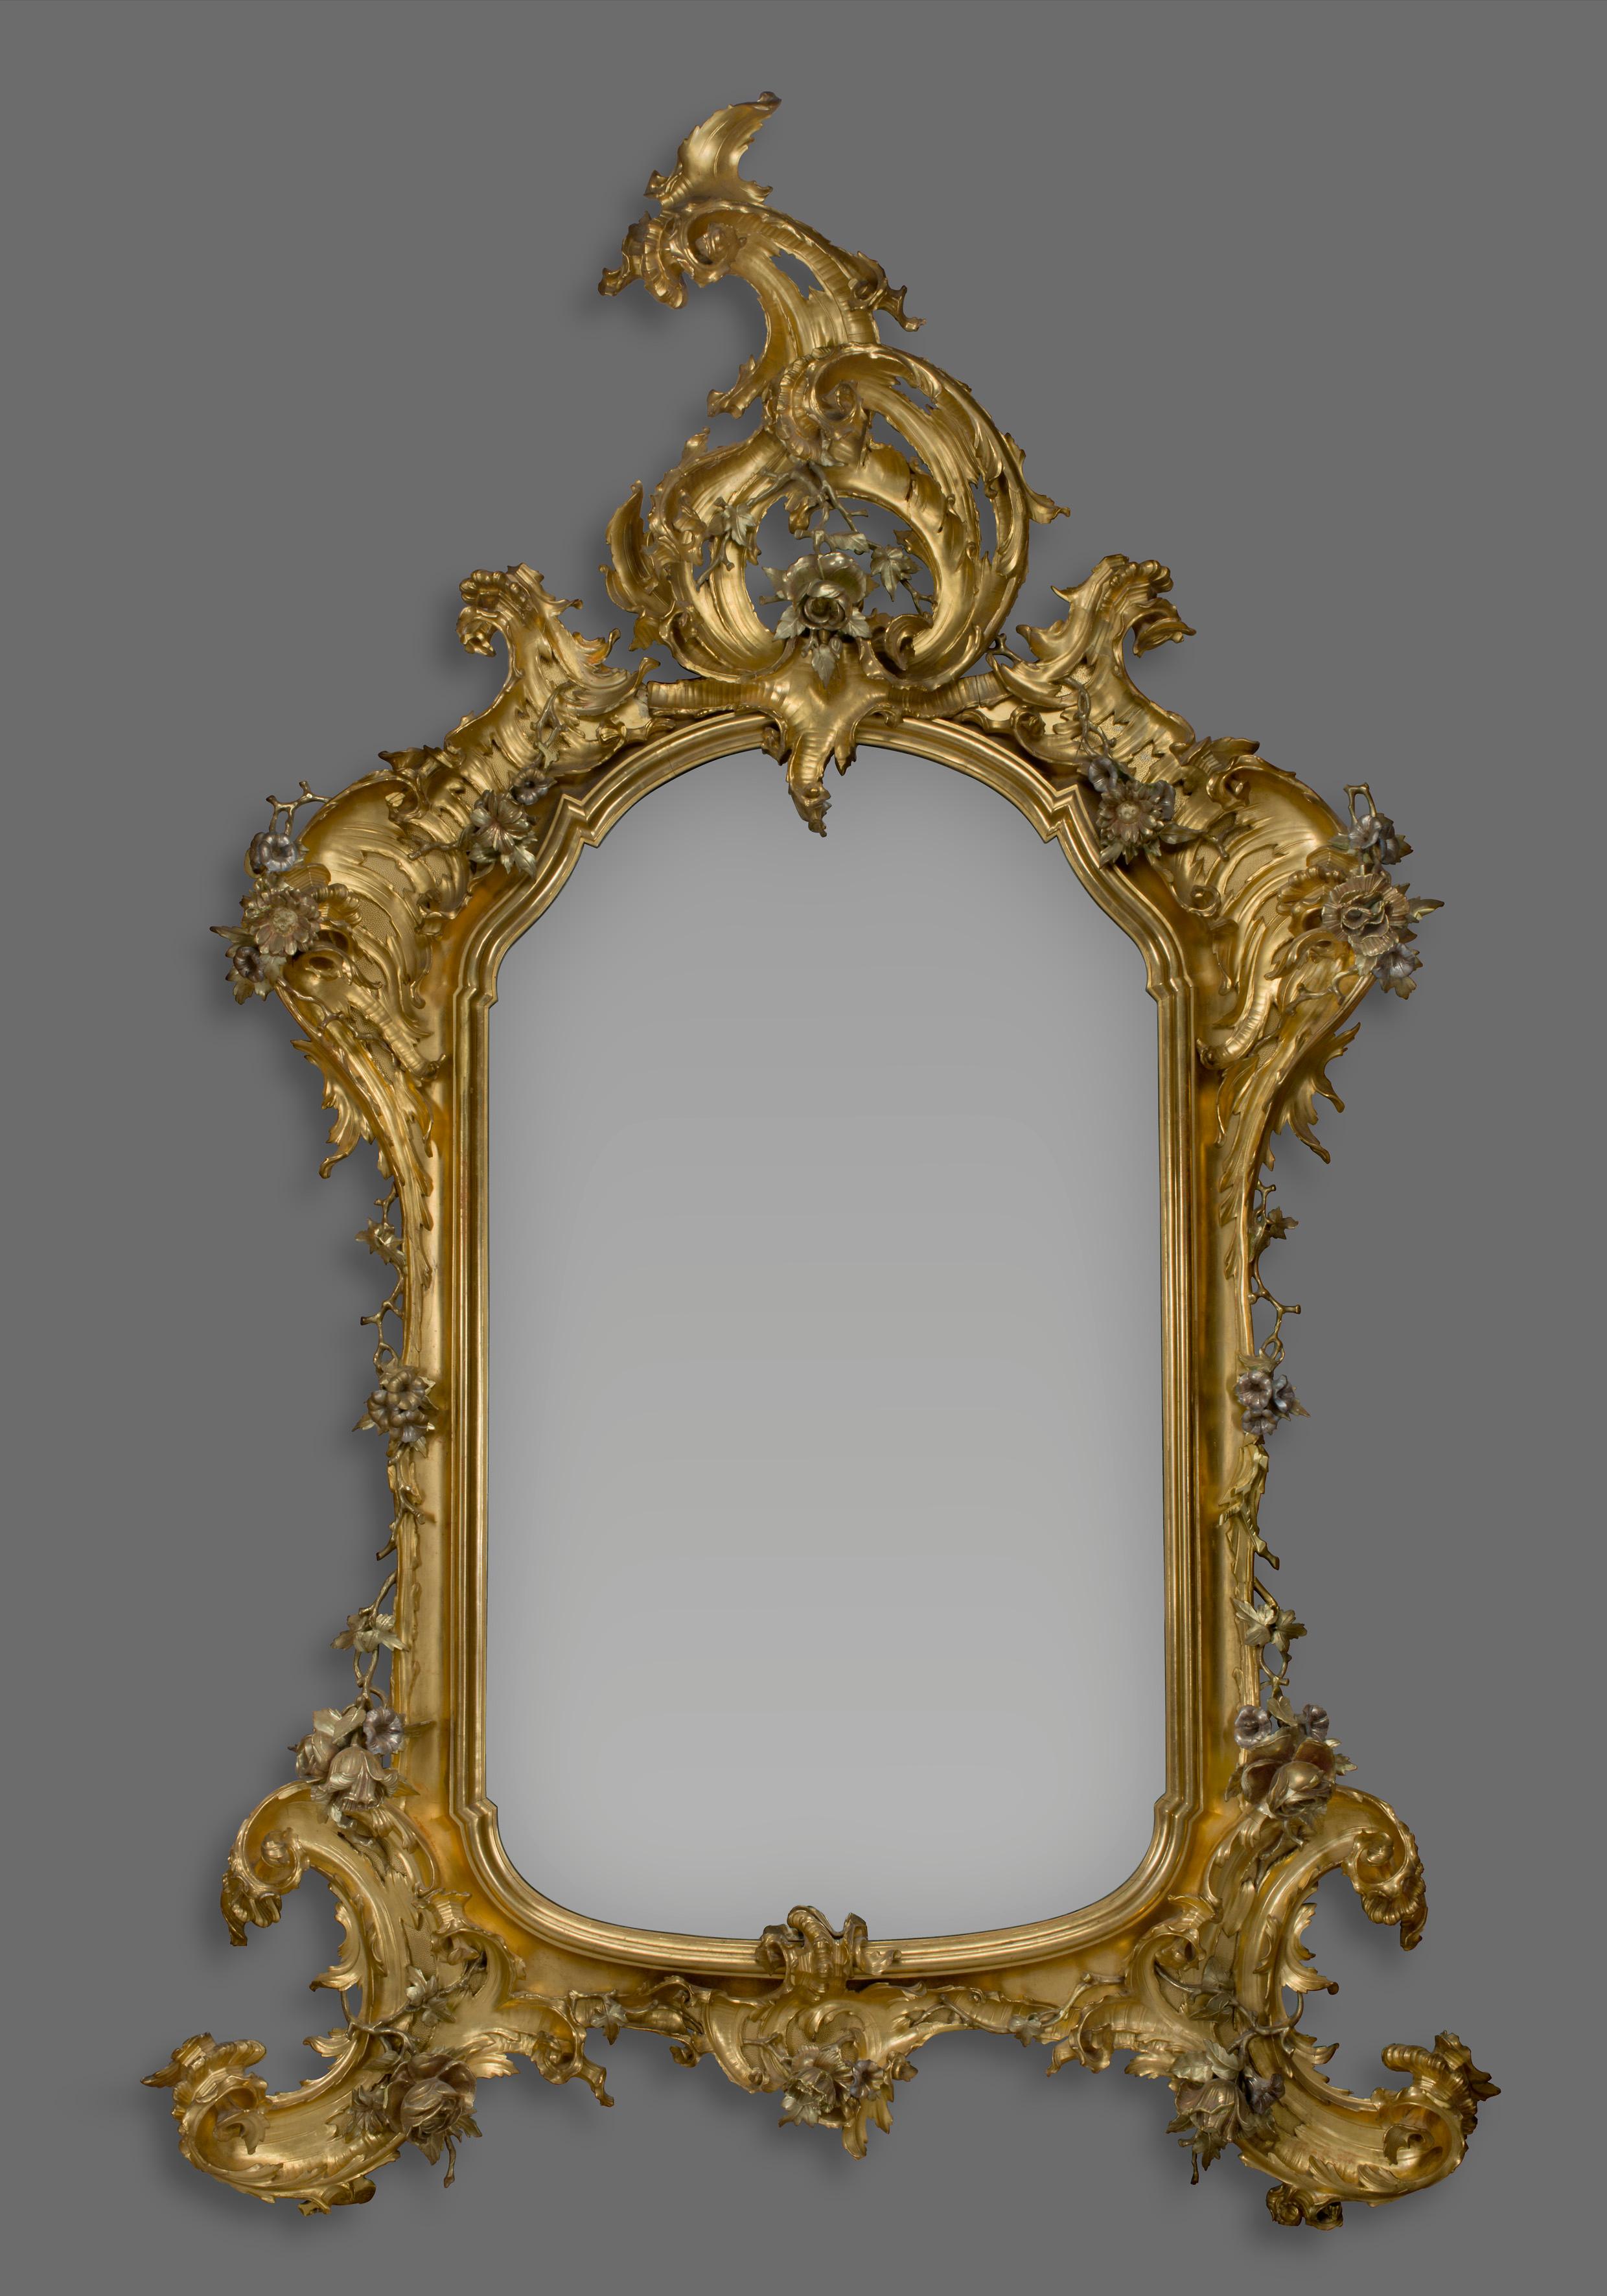 Un grand miroir sculpté, vermeil et en bois, de style Rococo.

Probablement allemand, vers 1870. 

La glace arquée est entourée d'un cadre intérieur moulé rentrant. Elle est revêtue d'un cadre extérieur avec des volutes en C opulentes et des